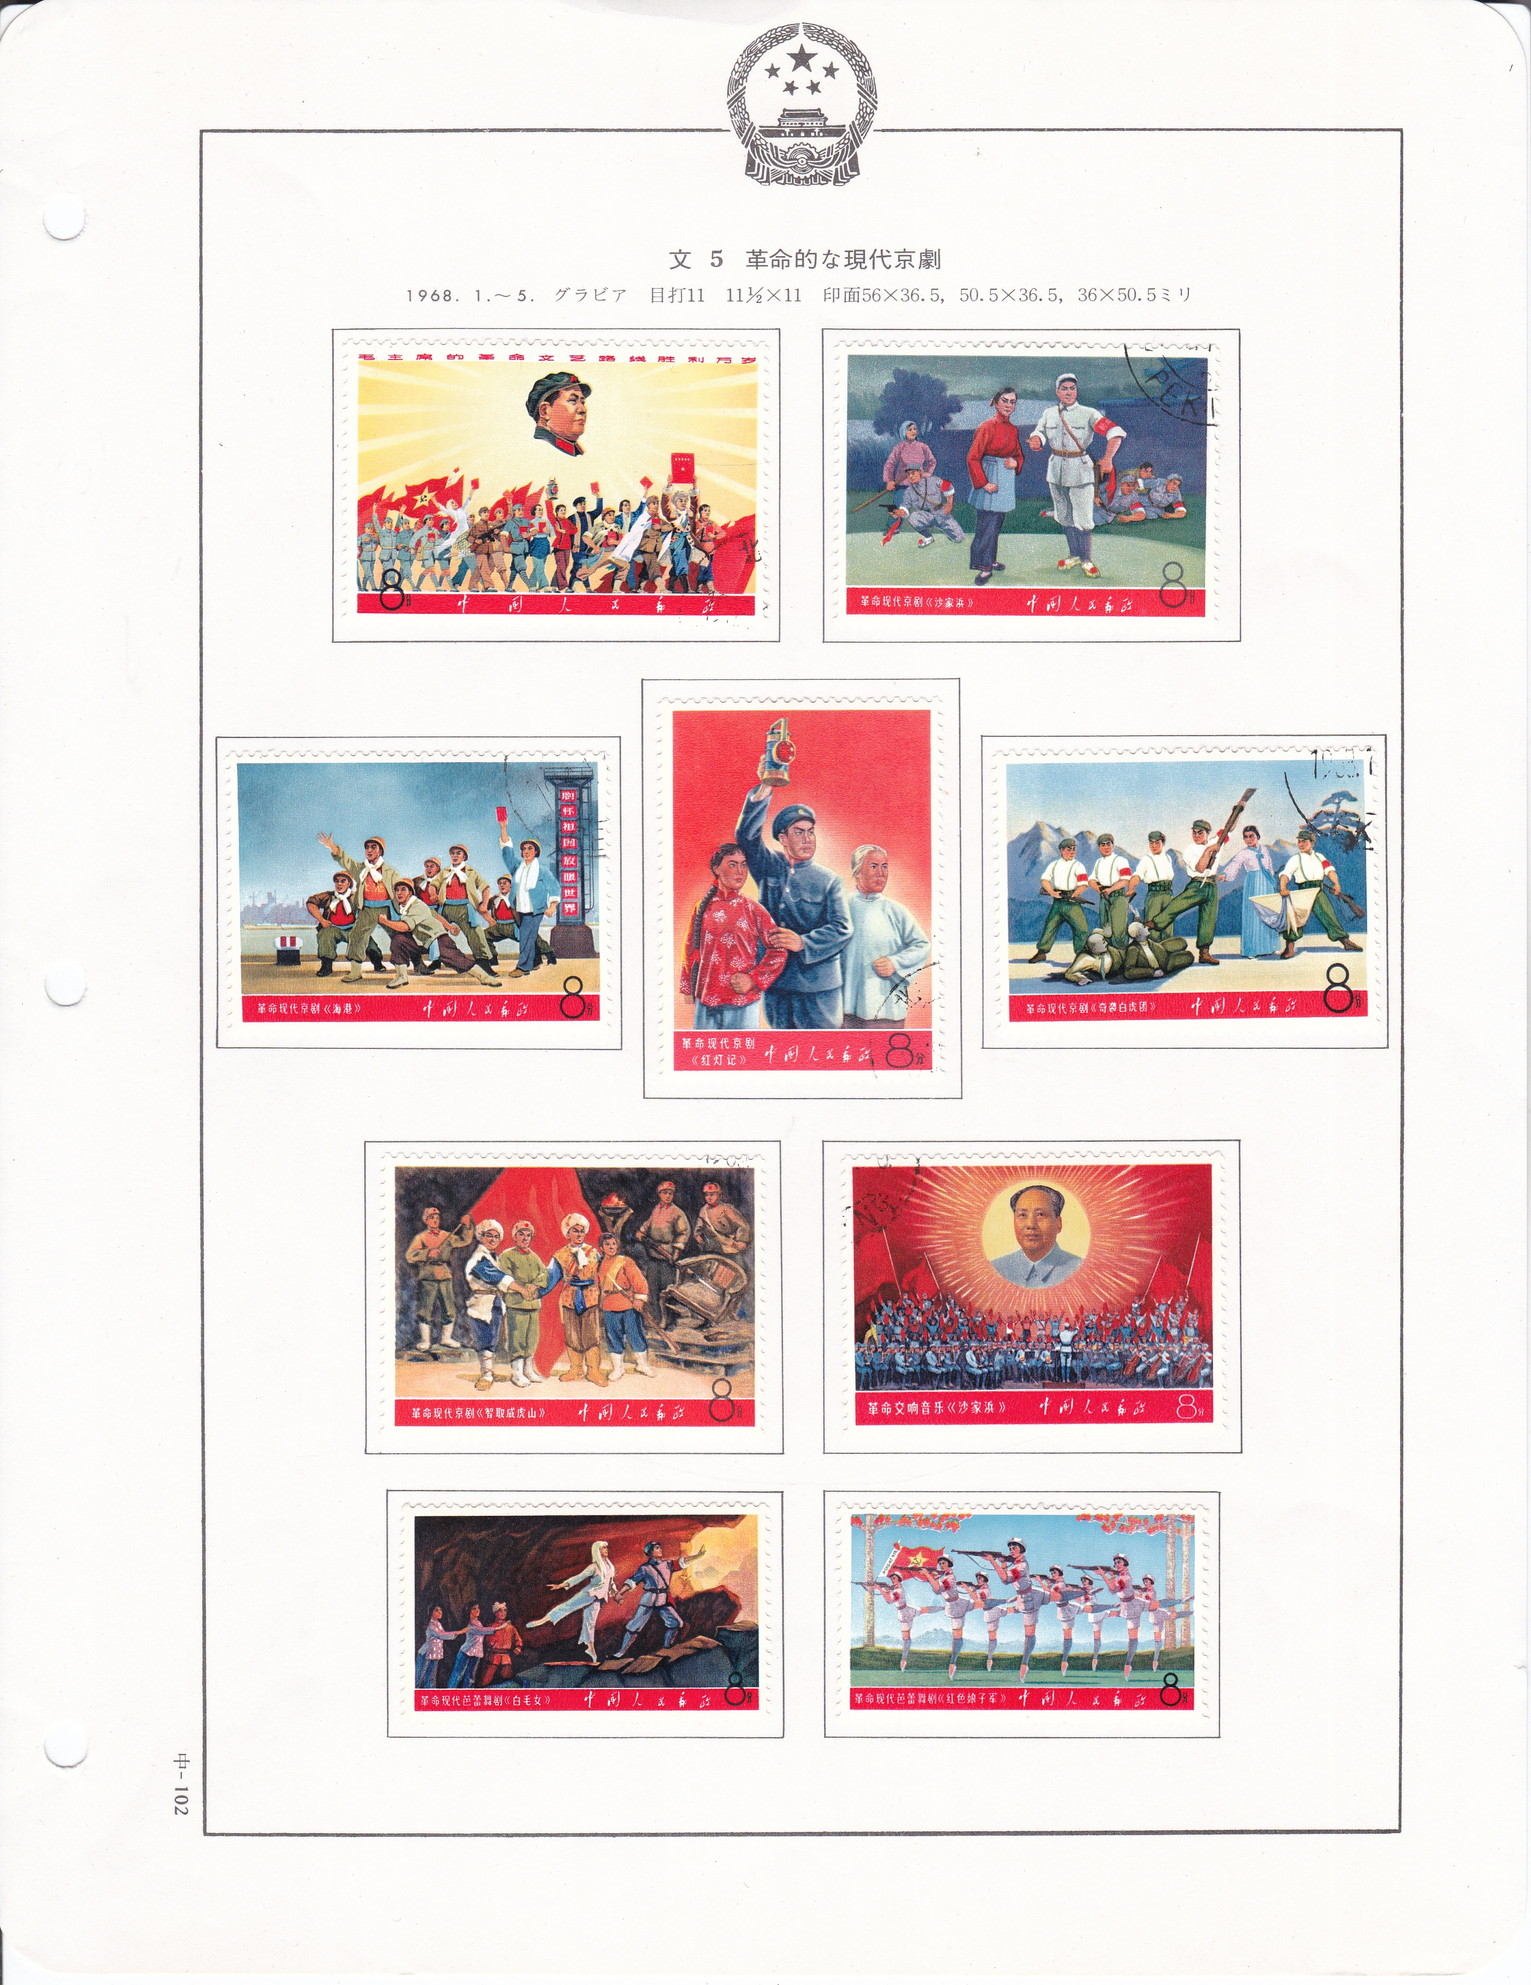 限时竞拍,中国切手文5革命的な現代京劇消印ありヒンジ